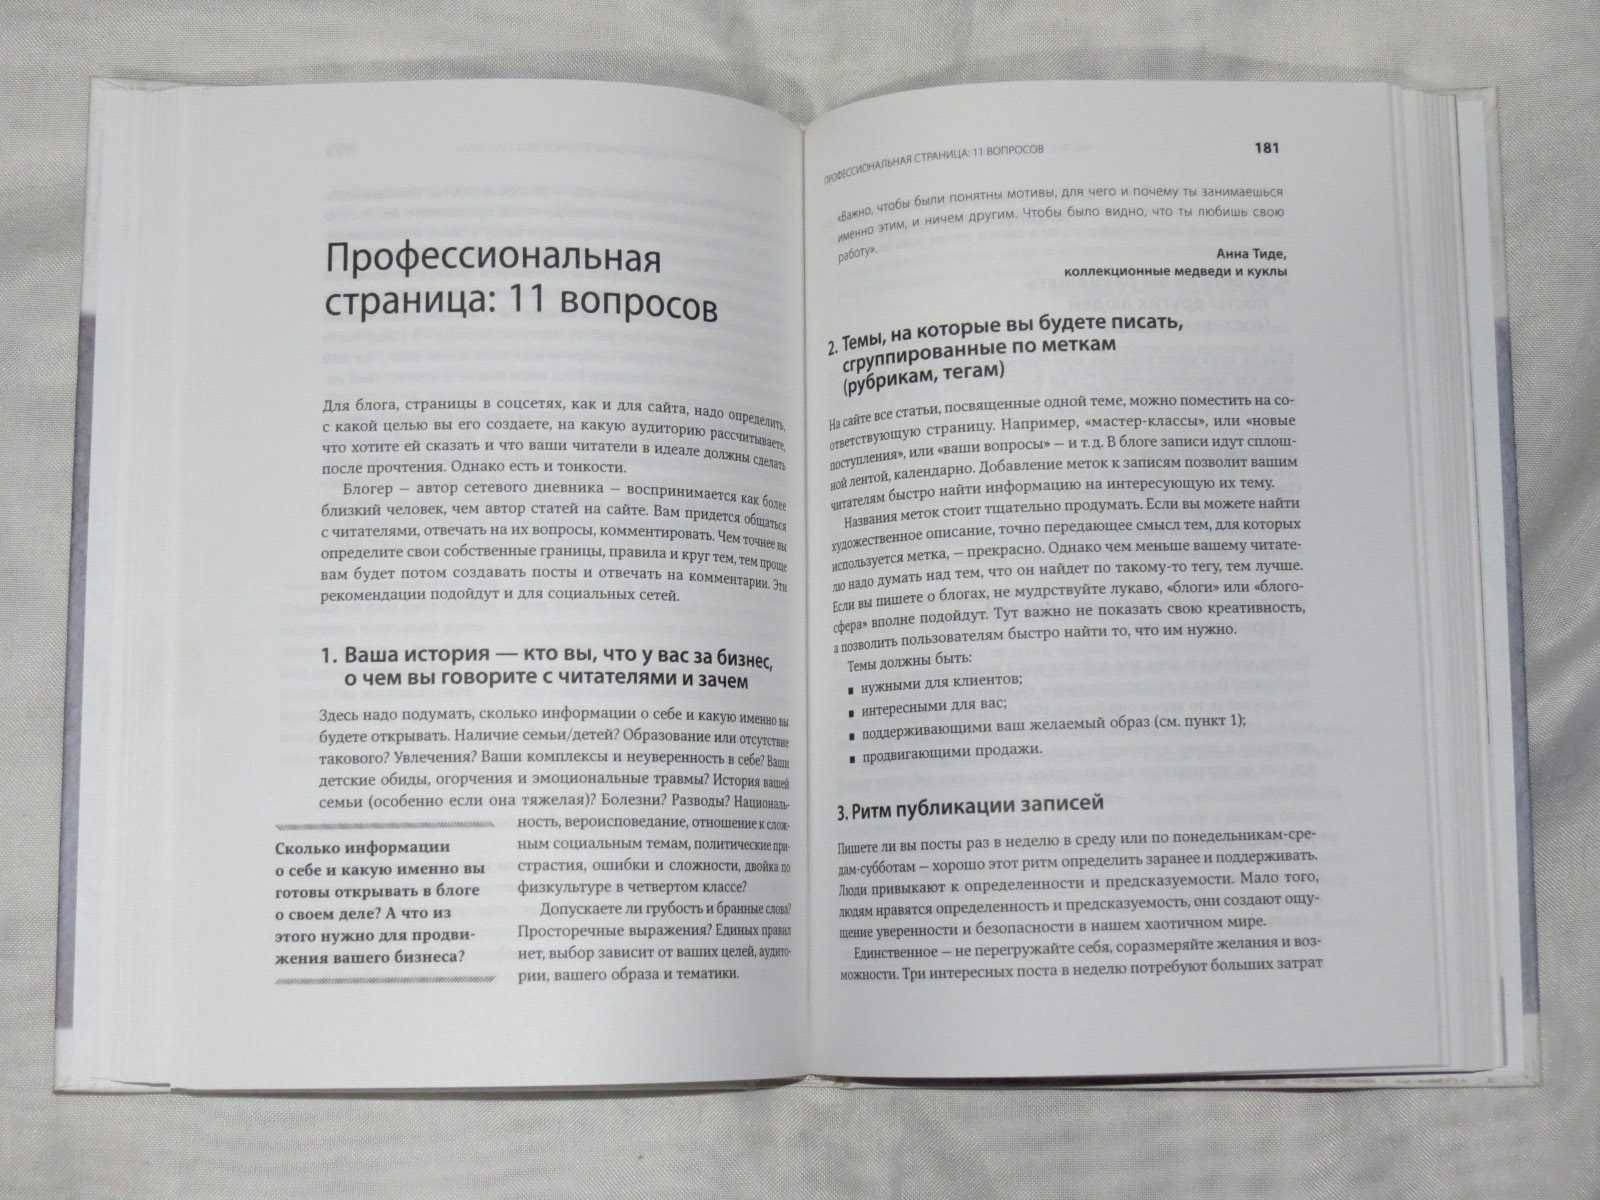 Книга "Бизнес своими руками" Ада Быковская